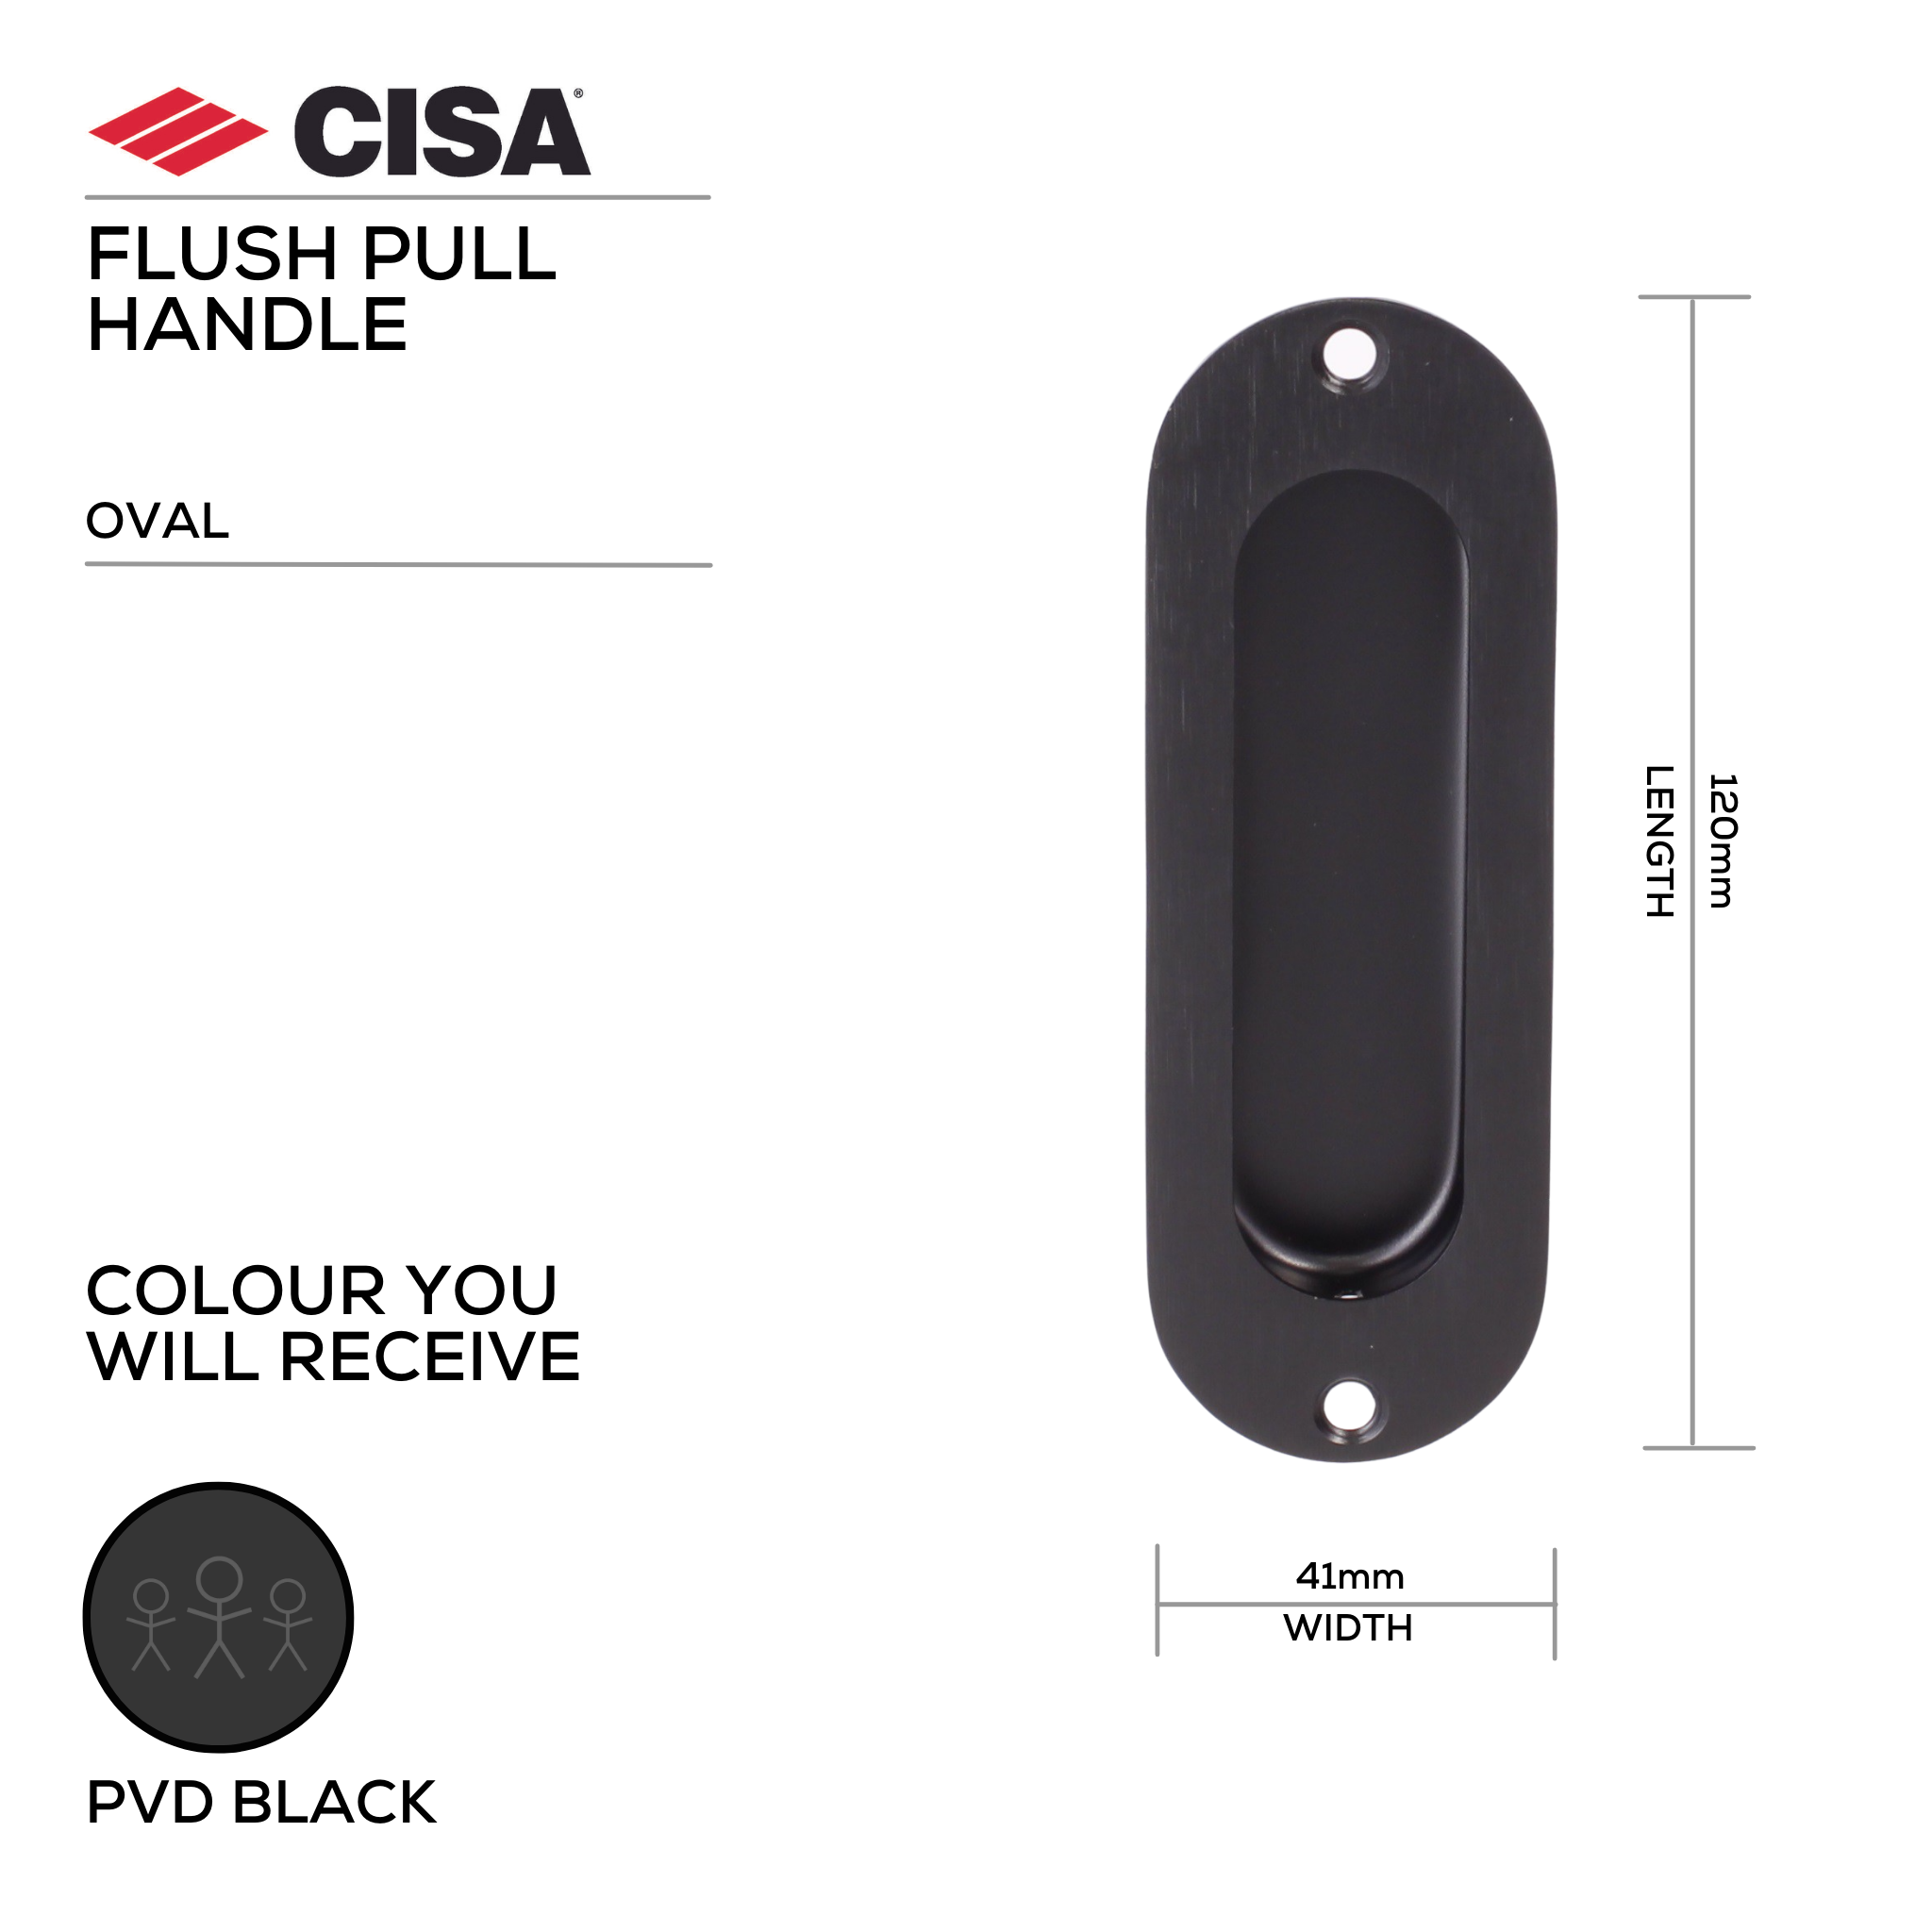 FP02.BL, Flush Pull, Oval, 120mm (l) x 41mm (w), Black, CISA